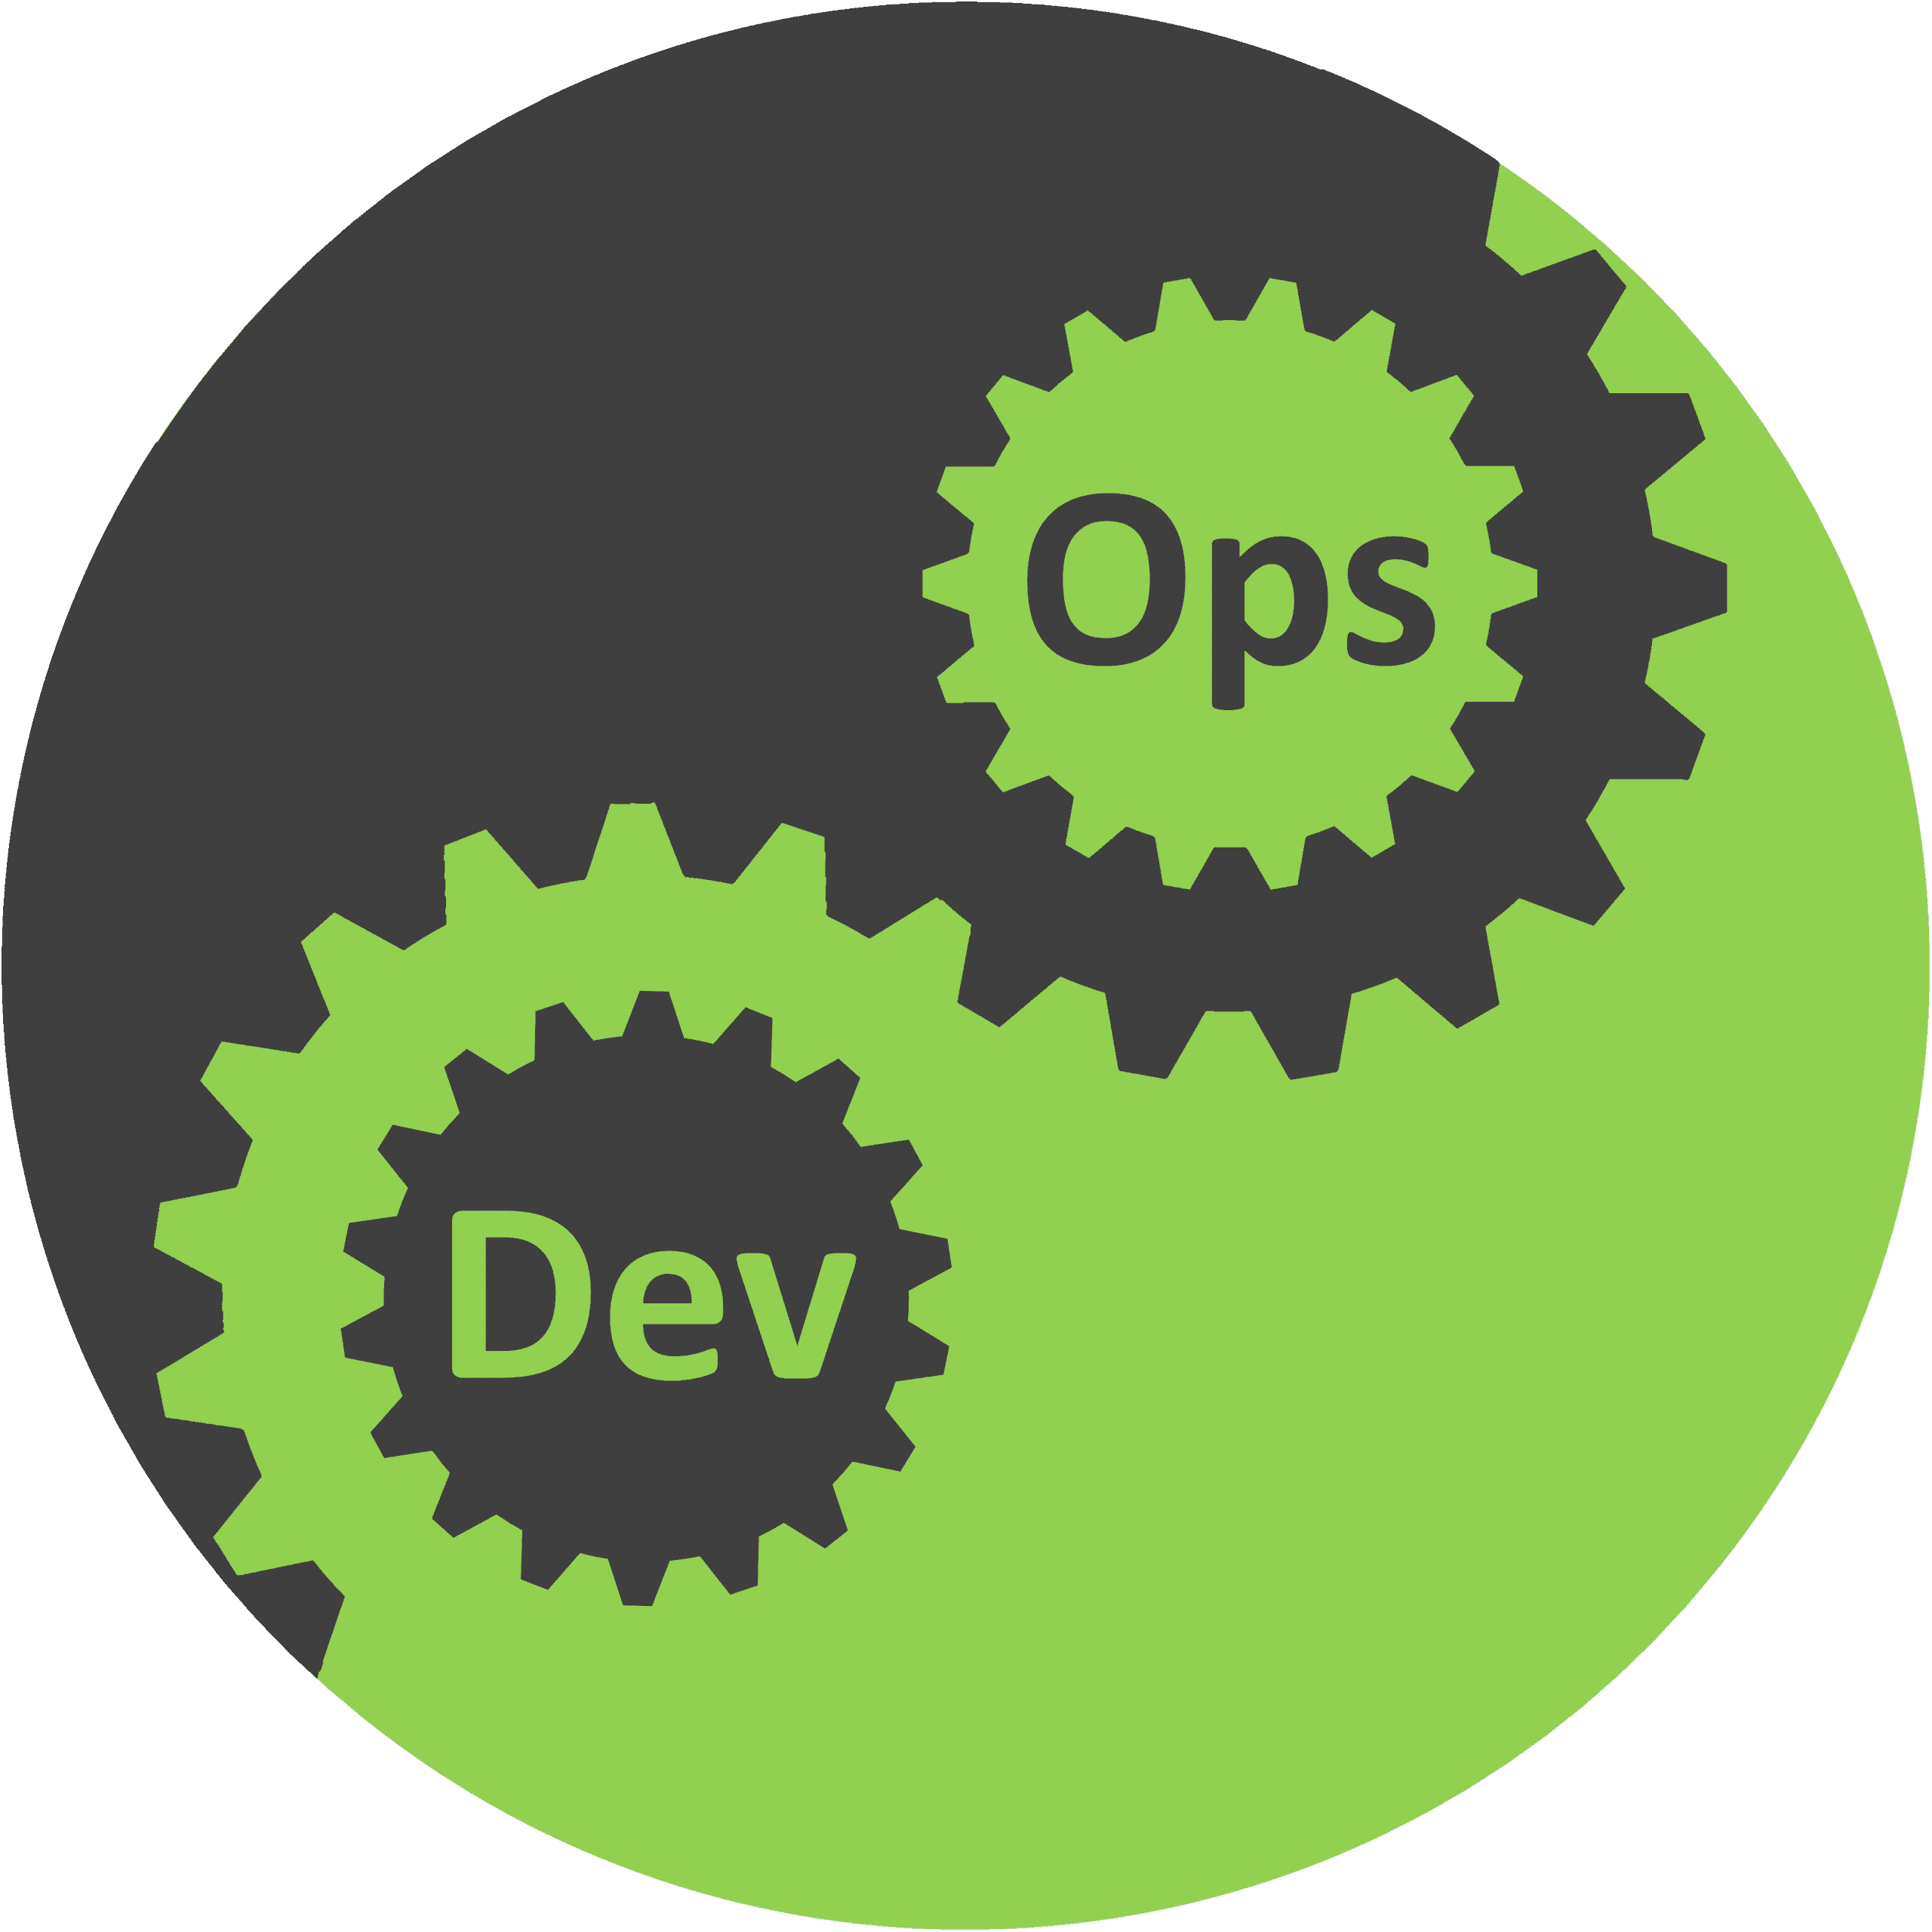 Quais são as principais certificações da carreira DevOps?